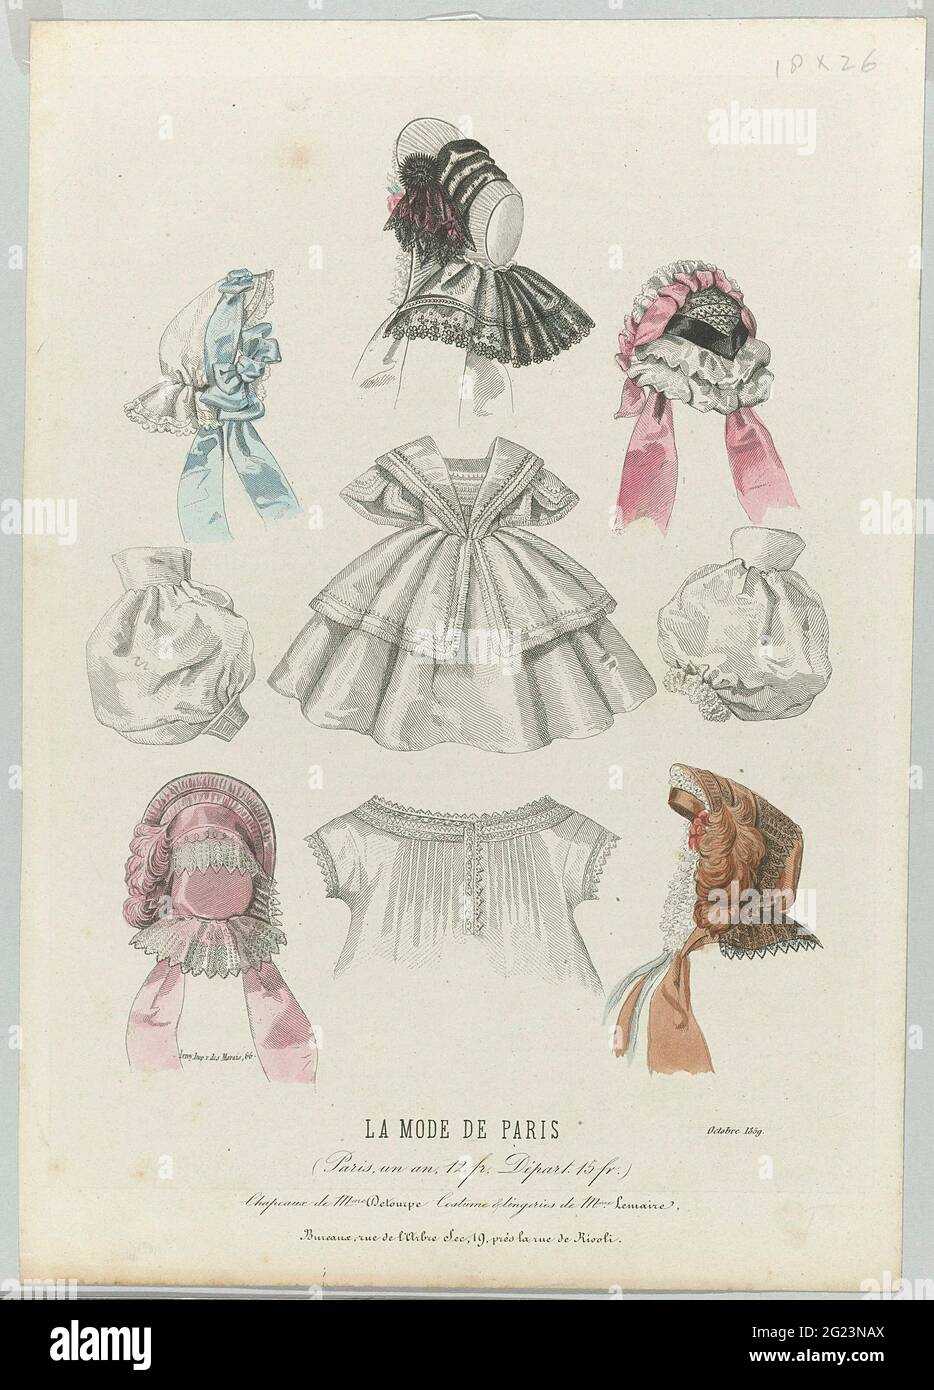 La Mode de Paris, Oktober 1859: Chapeaux de Mme Detourp (...). Fünf  verschiedene Hüte mit Stretchbändern, ein Kleid, Unterhemd (Chemise) und  zwei lose Puffing unter den Ärmeln. Laut der Bildunterschrift: Hüte von